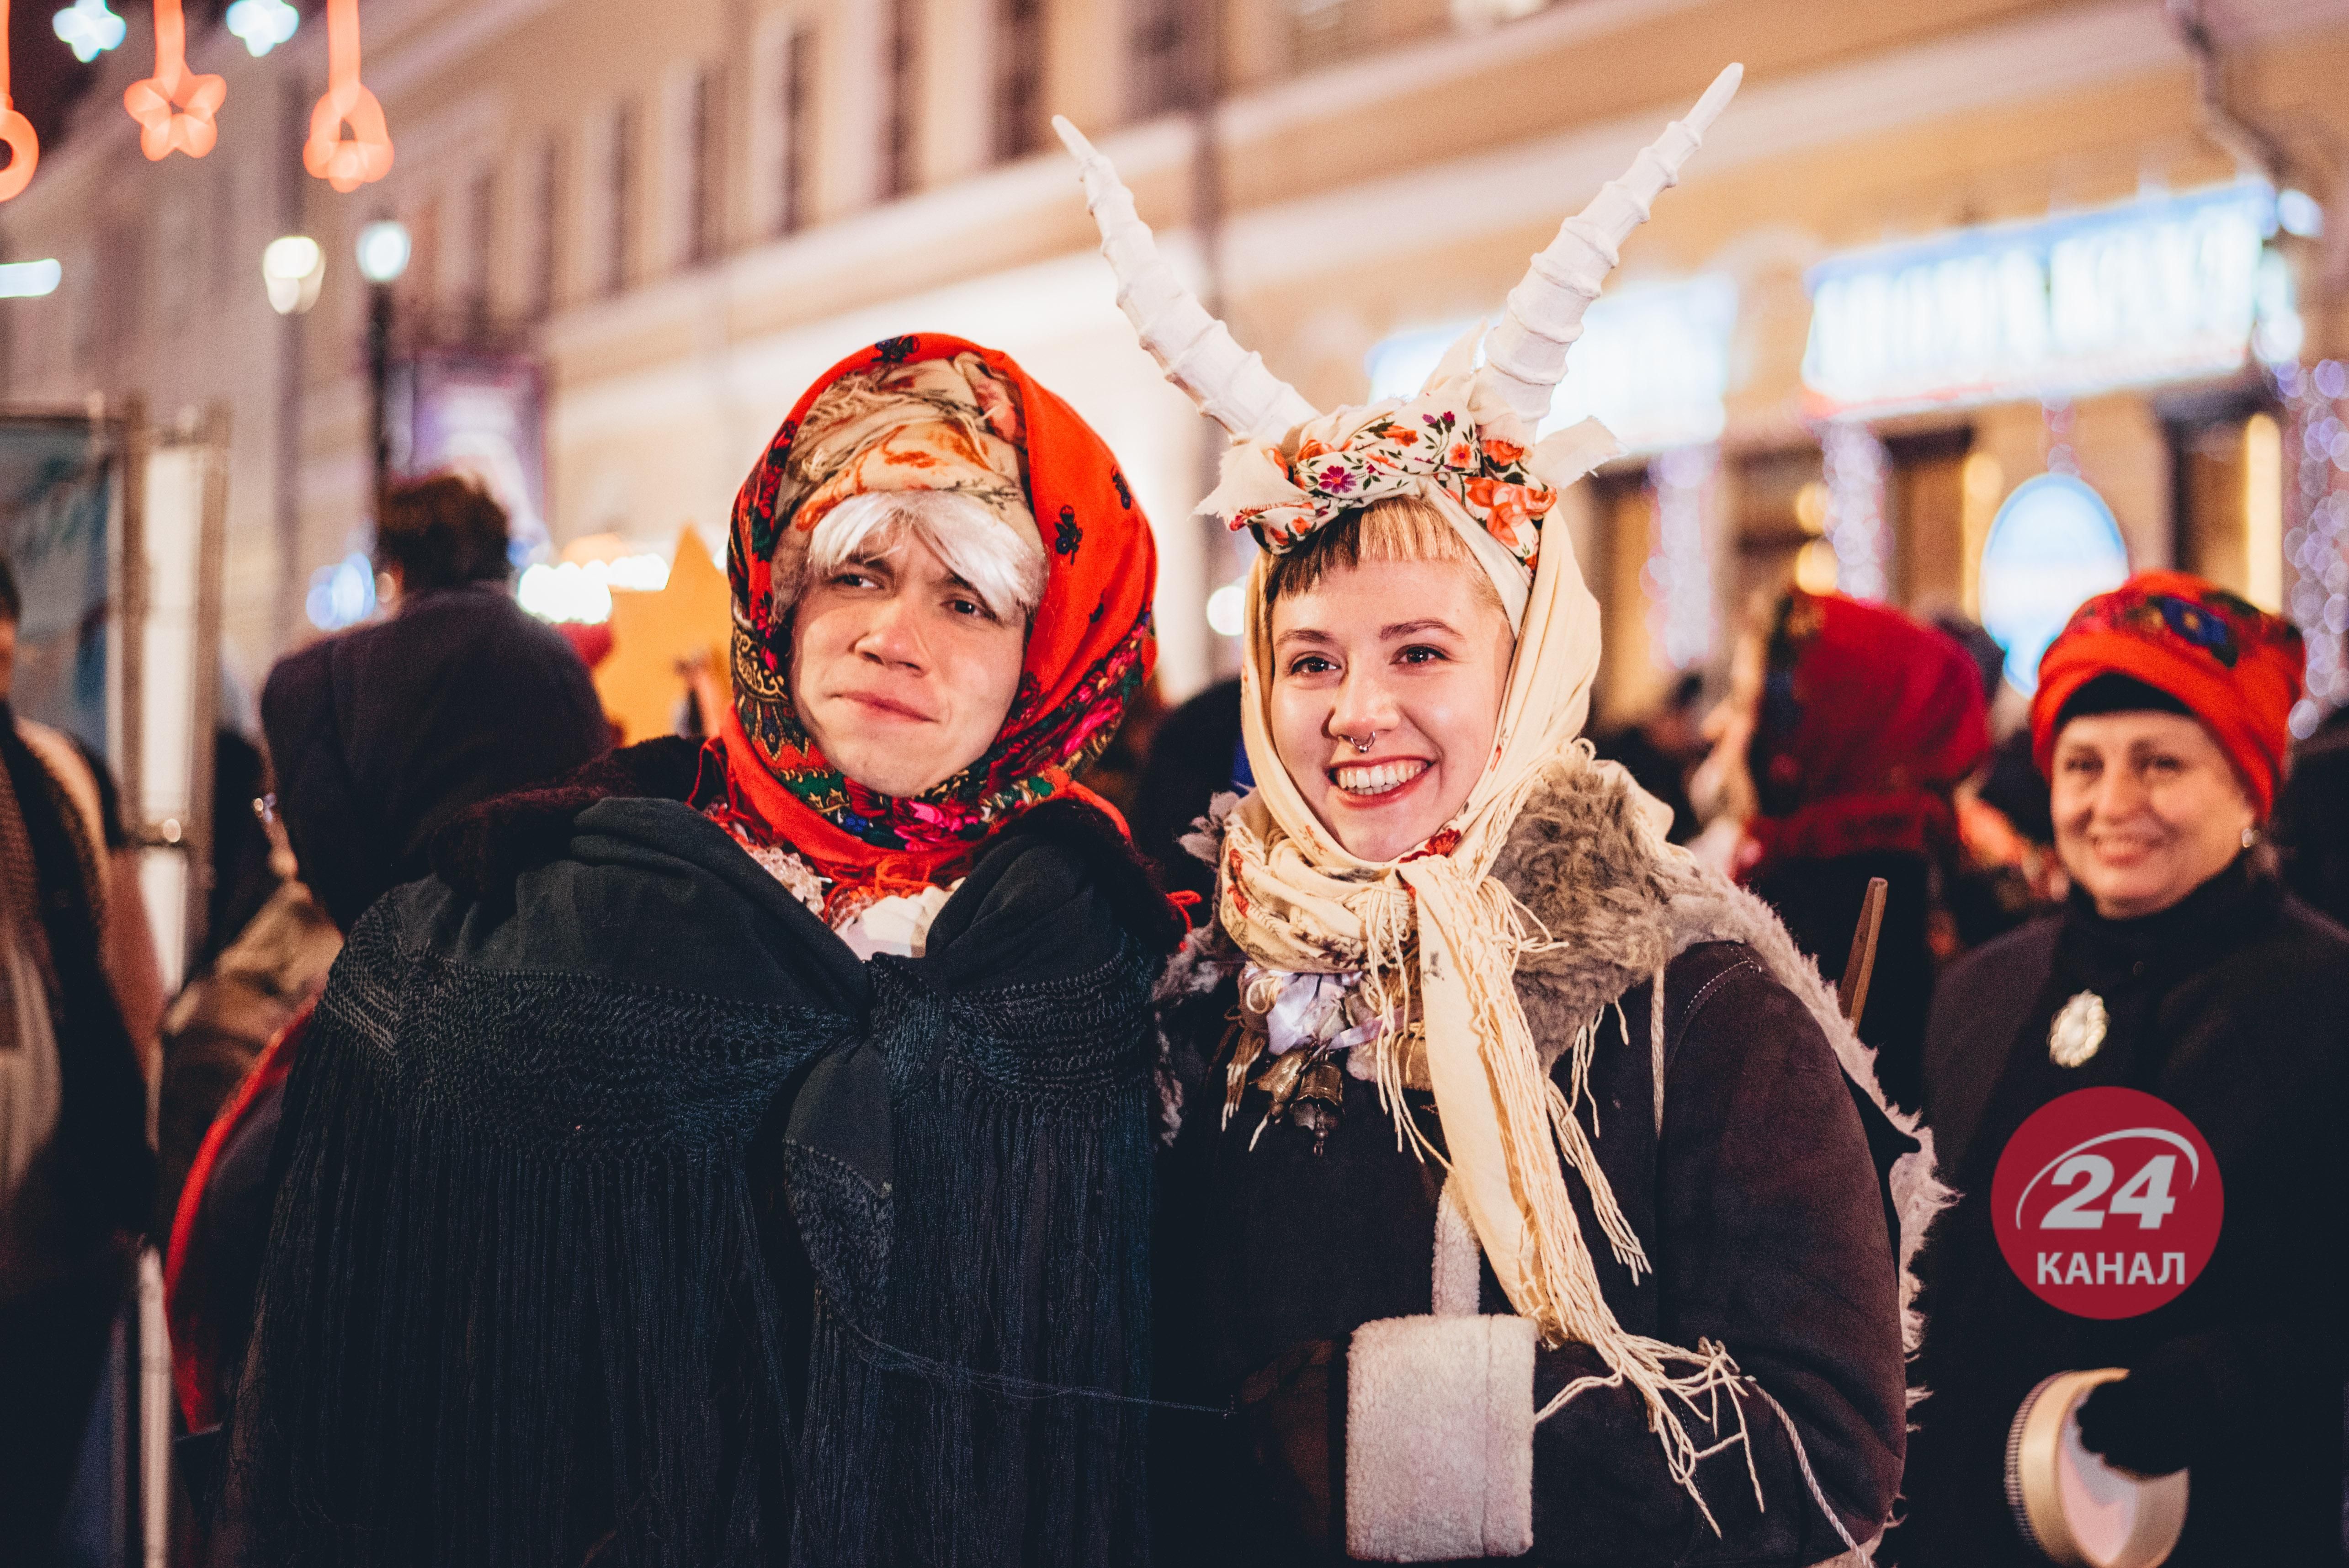 Поздравить или поздравить - как правильно сказать на украинском - языковые советы